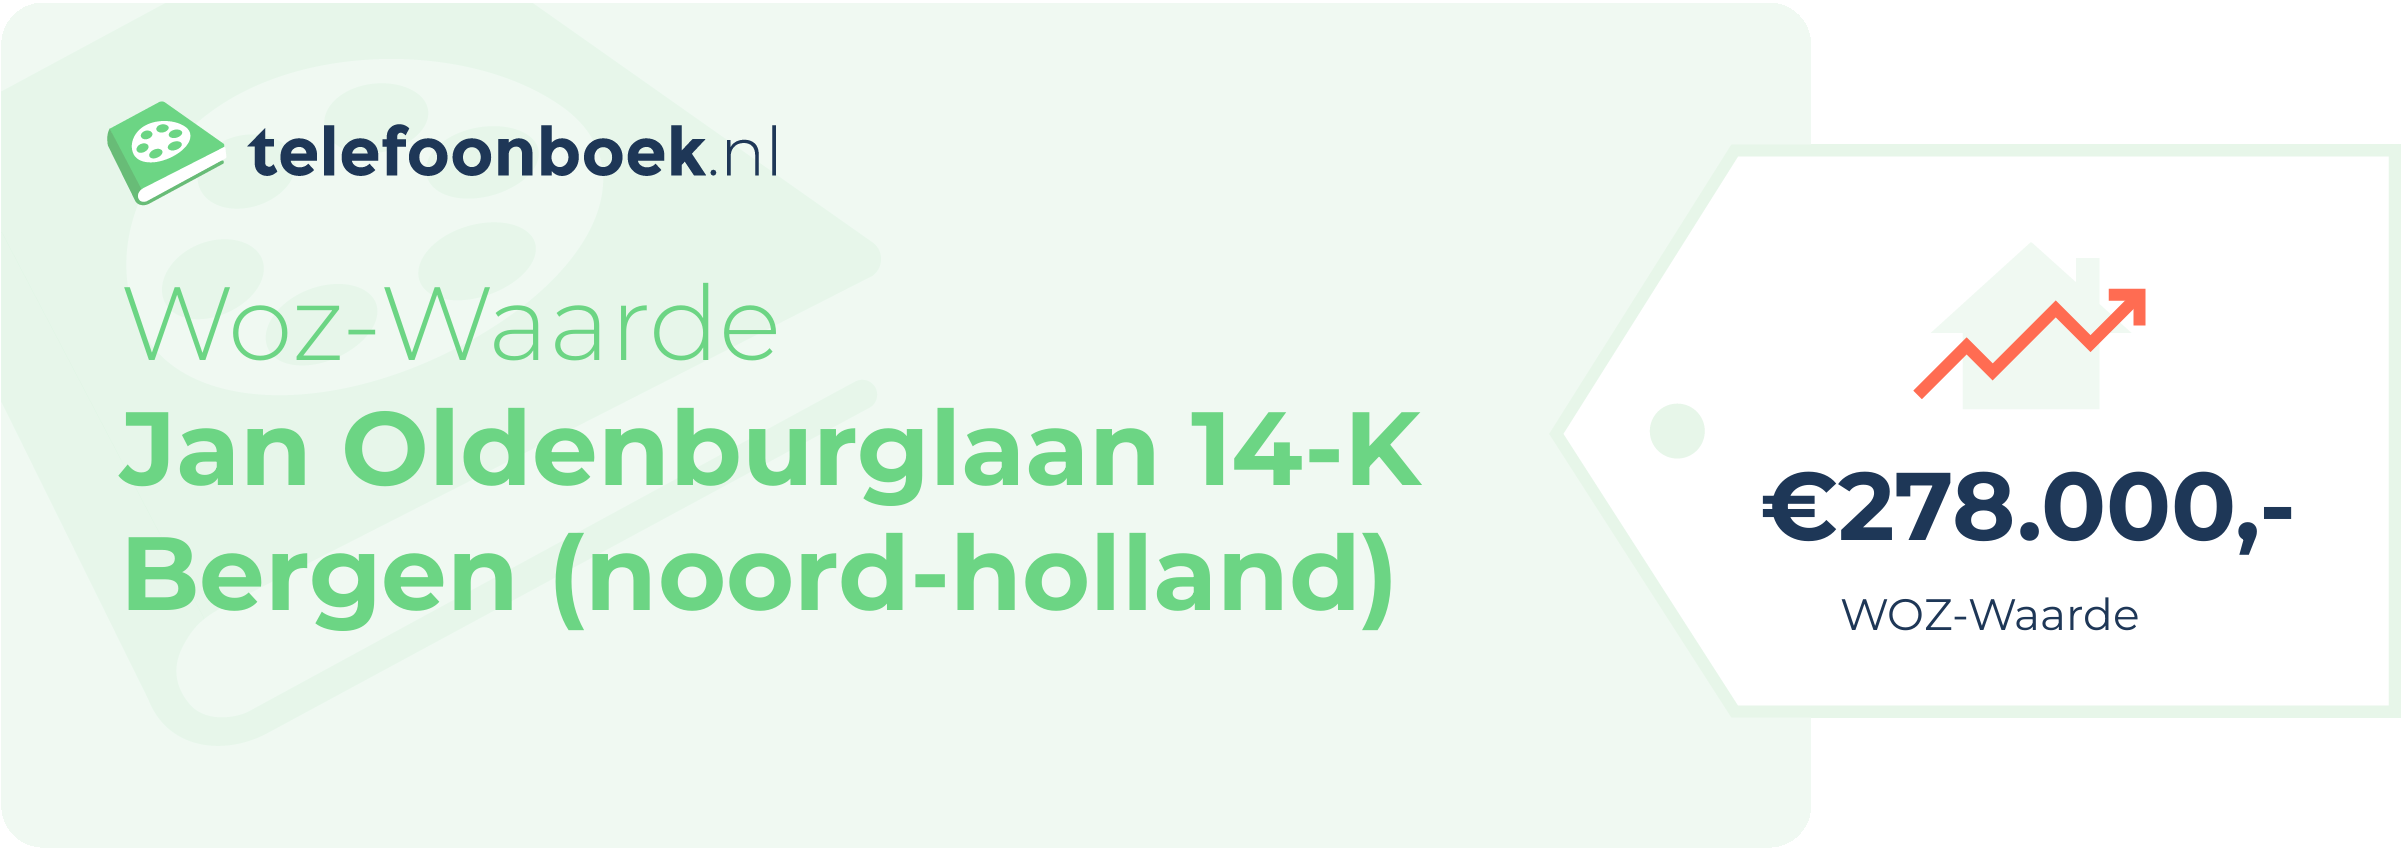 WOZ-waarde Jan Oldenburglaan 14-K Bergen (Noord-Holland)